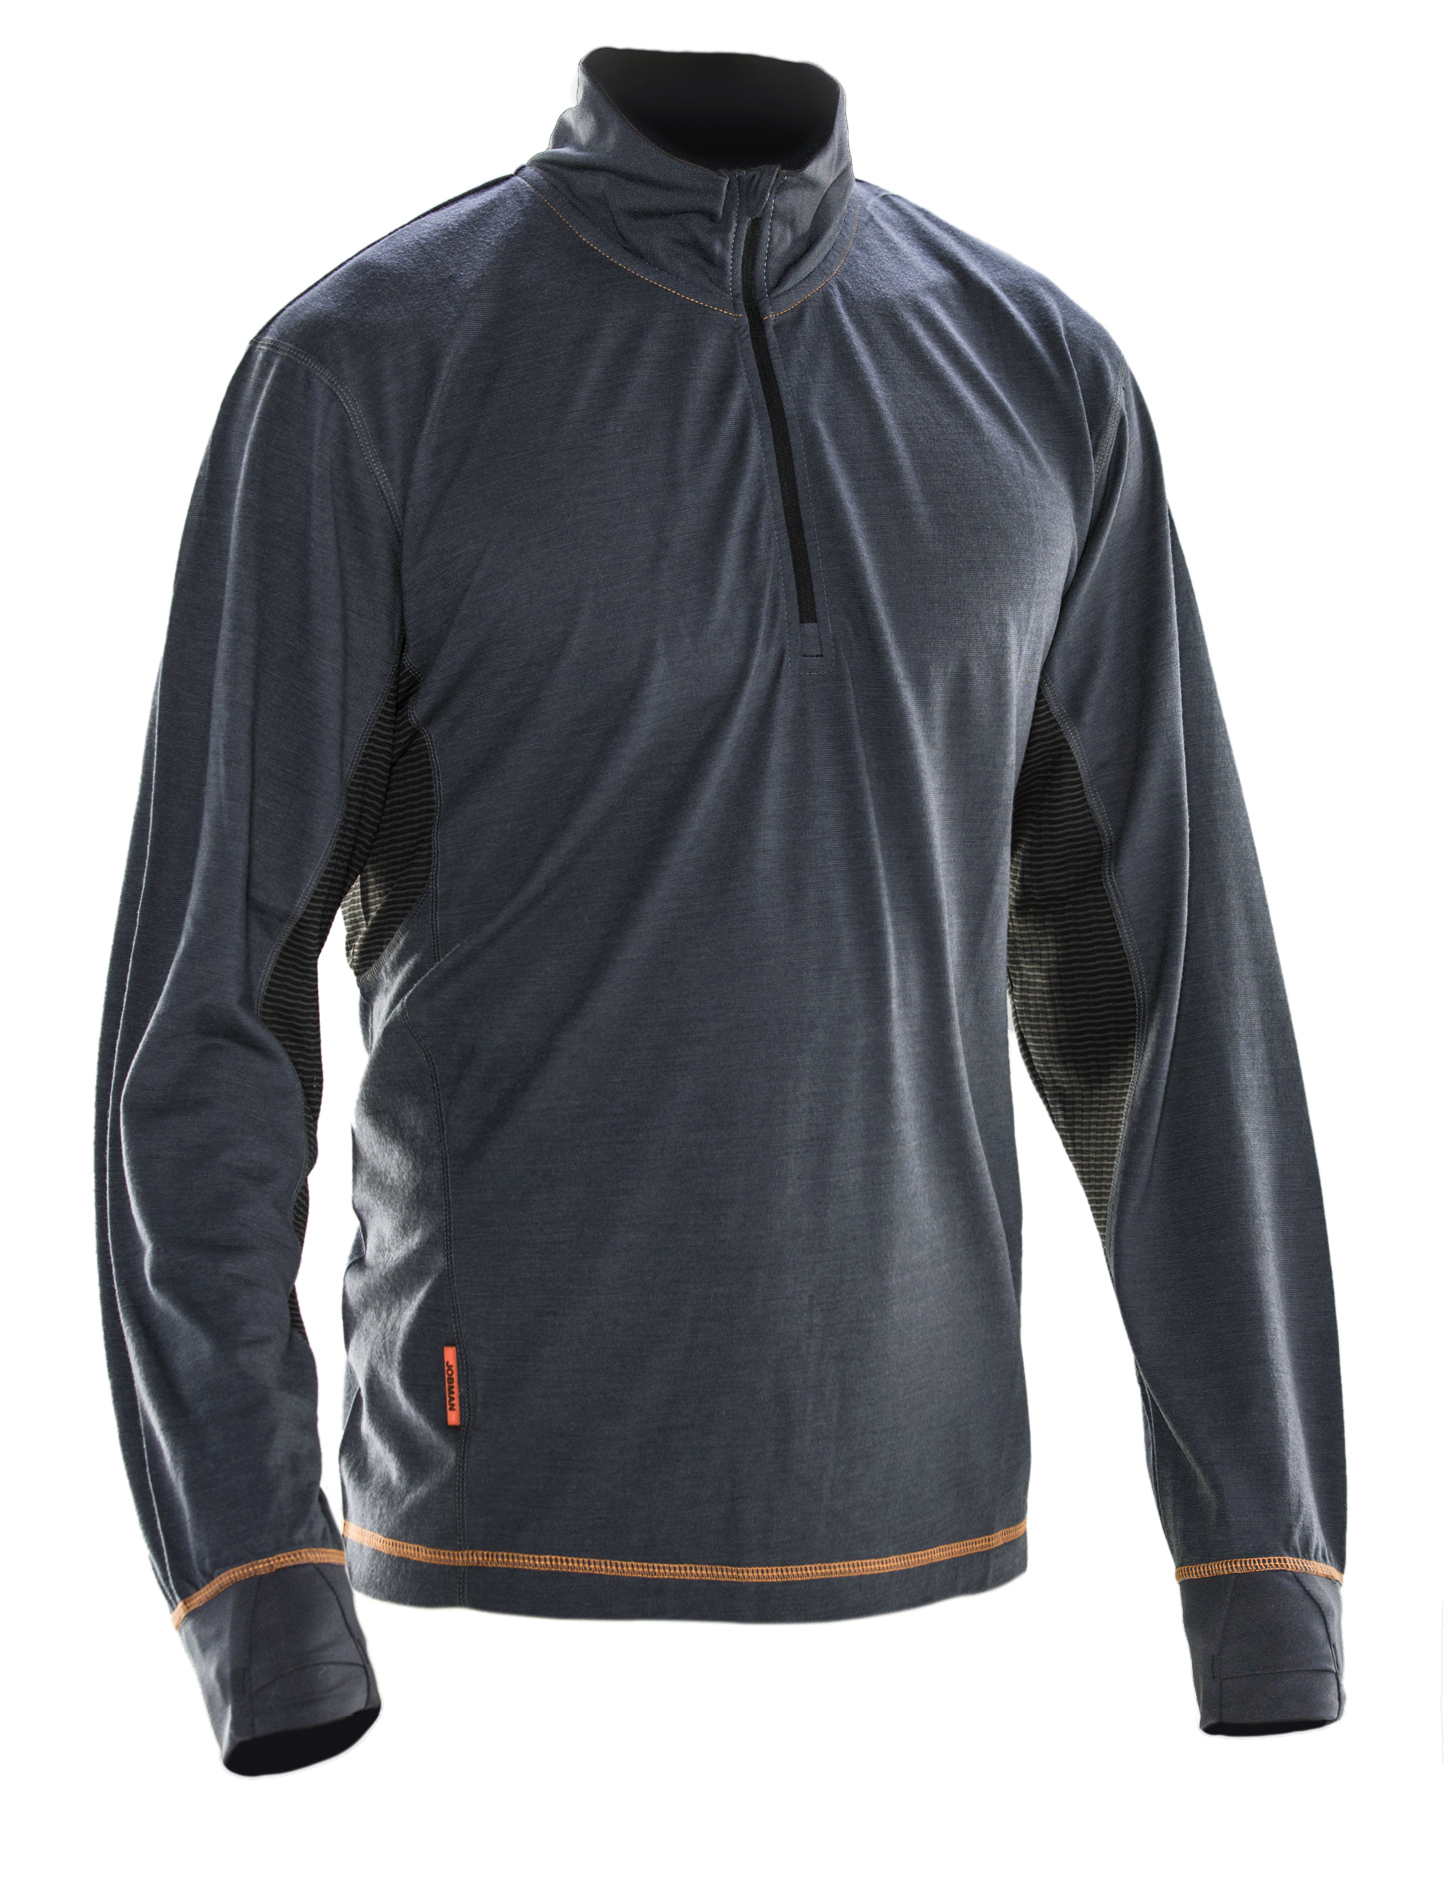 5596 Sweatshirt Dry-tech™ en laine mérinos XL gris foncé/noir